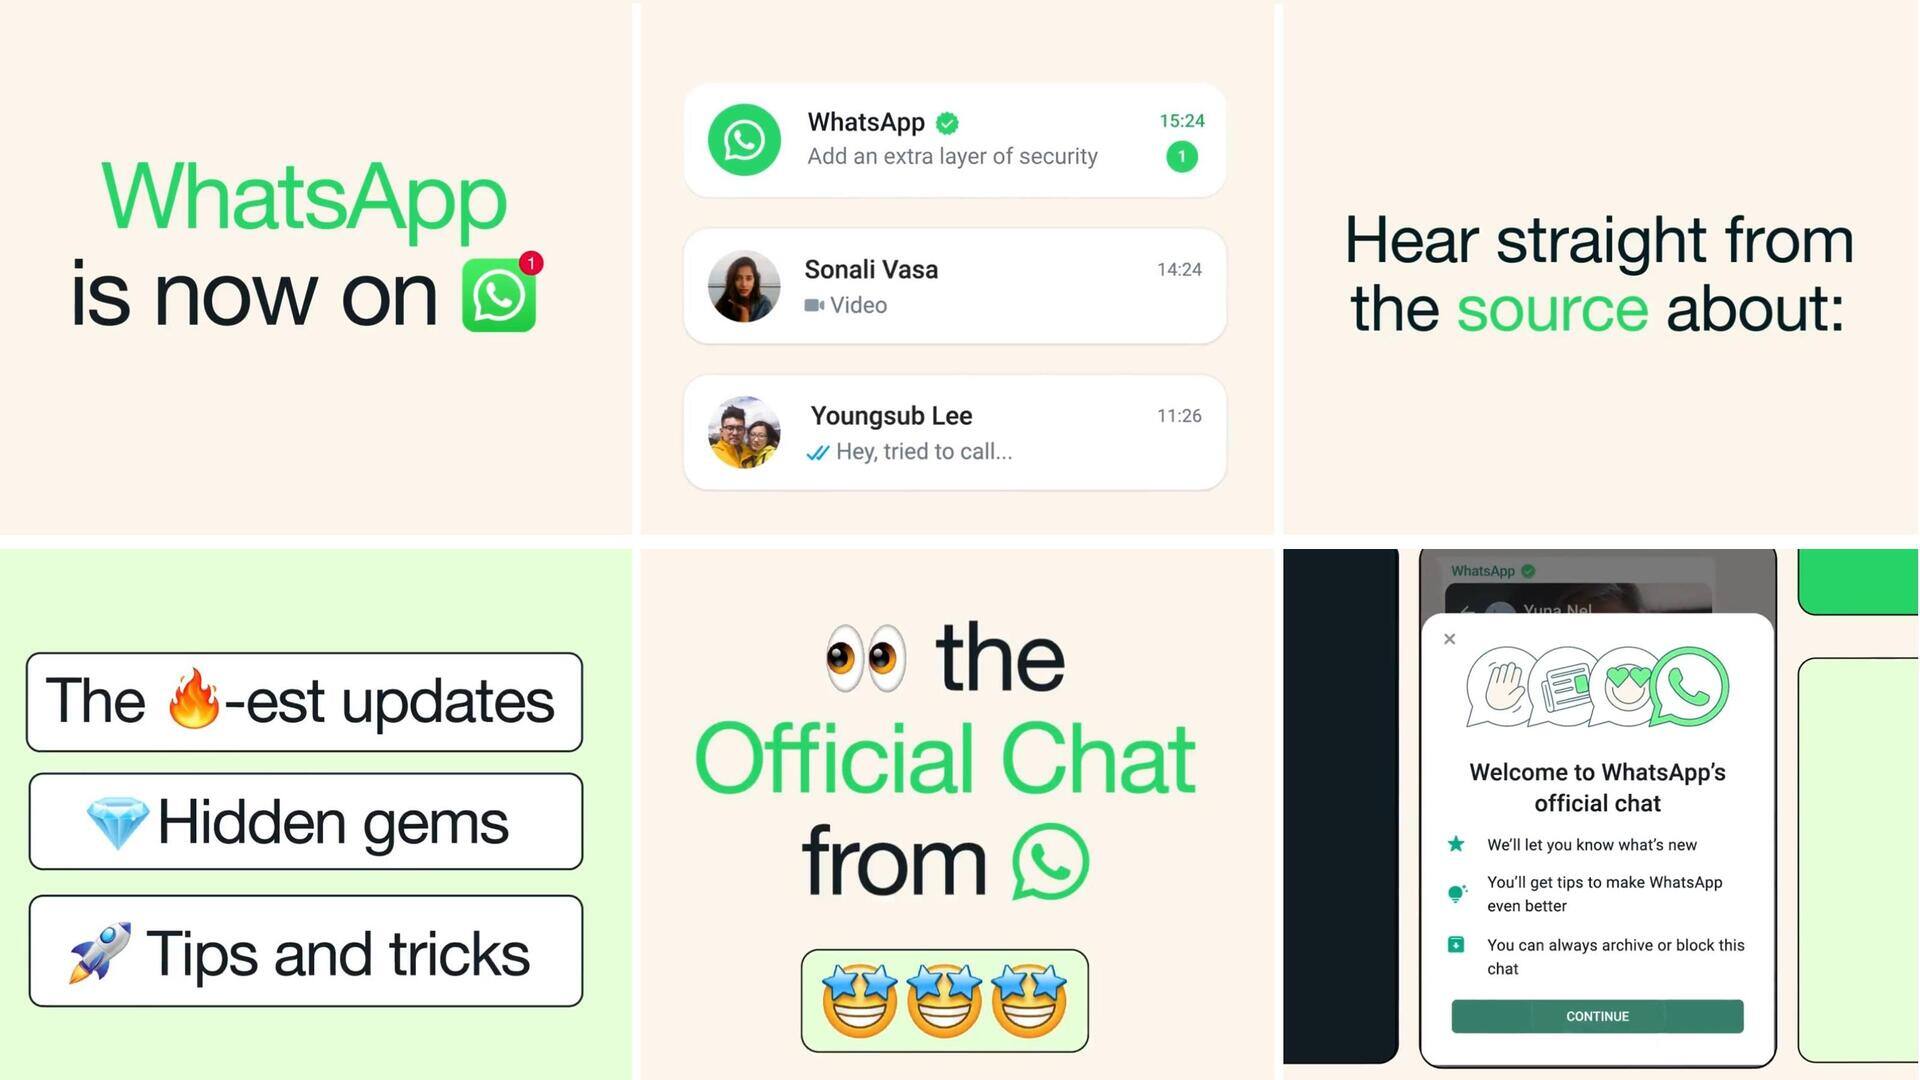 व्हाट्सऐप ने लॉन्च किया नया फीचर व्हाट्सऐप चैट, टिप्स और ट्रिक्स के साथ मिलेंगे लेटेस्ट अपडेट